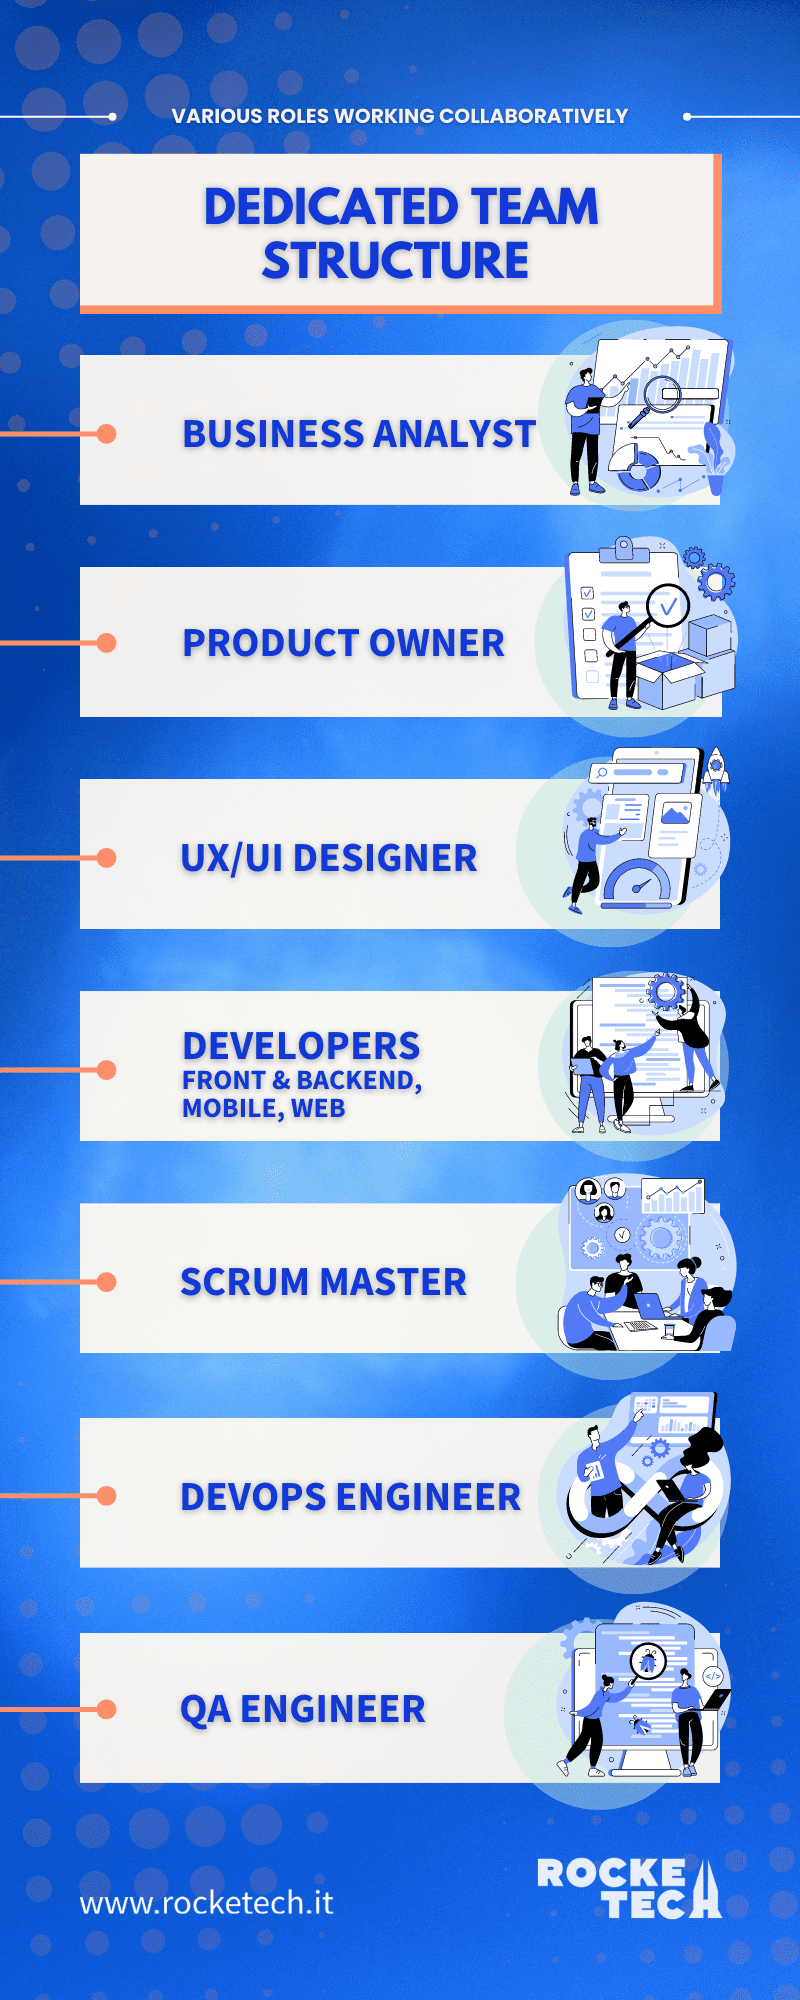 An infographic describing a dedicated software development team structure. 